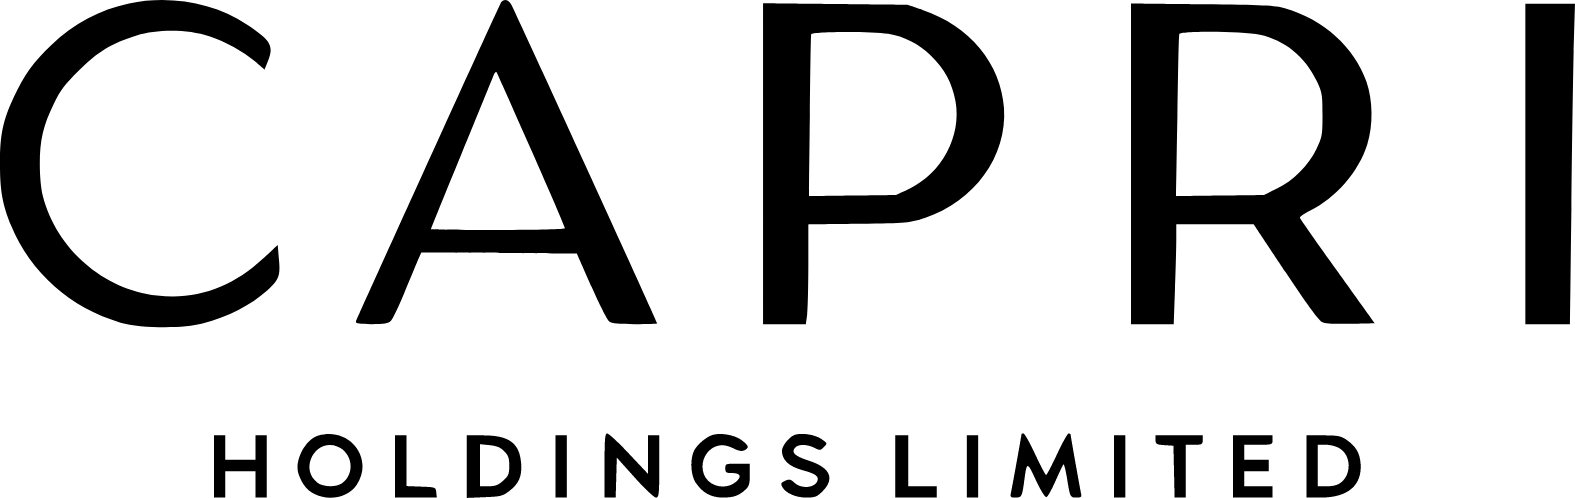 Capri Holdings logo large (transparent PNG)